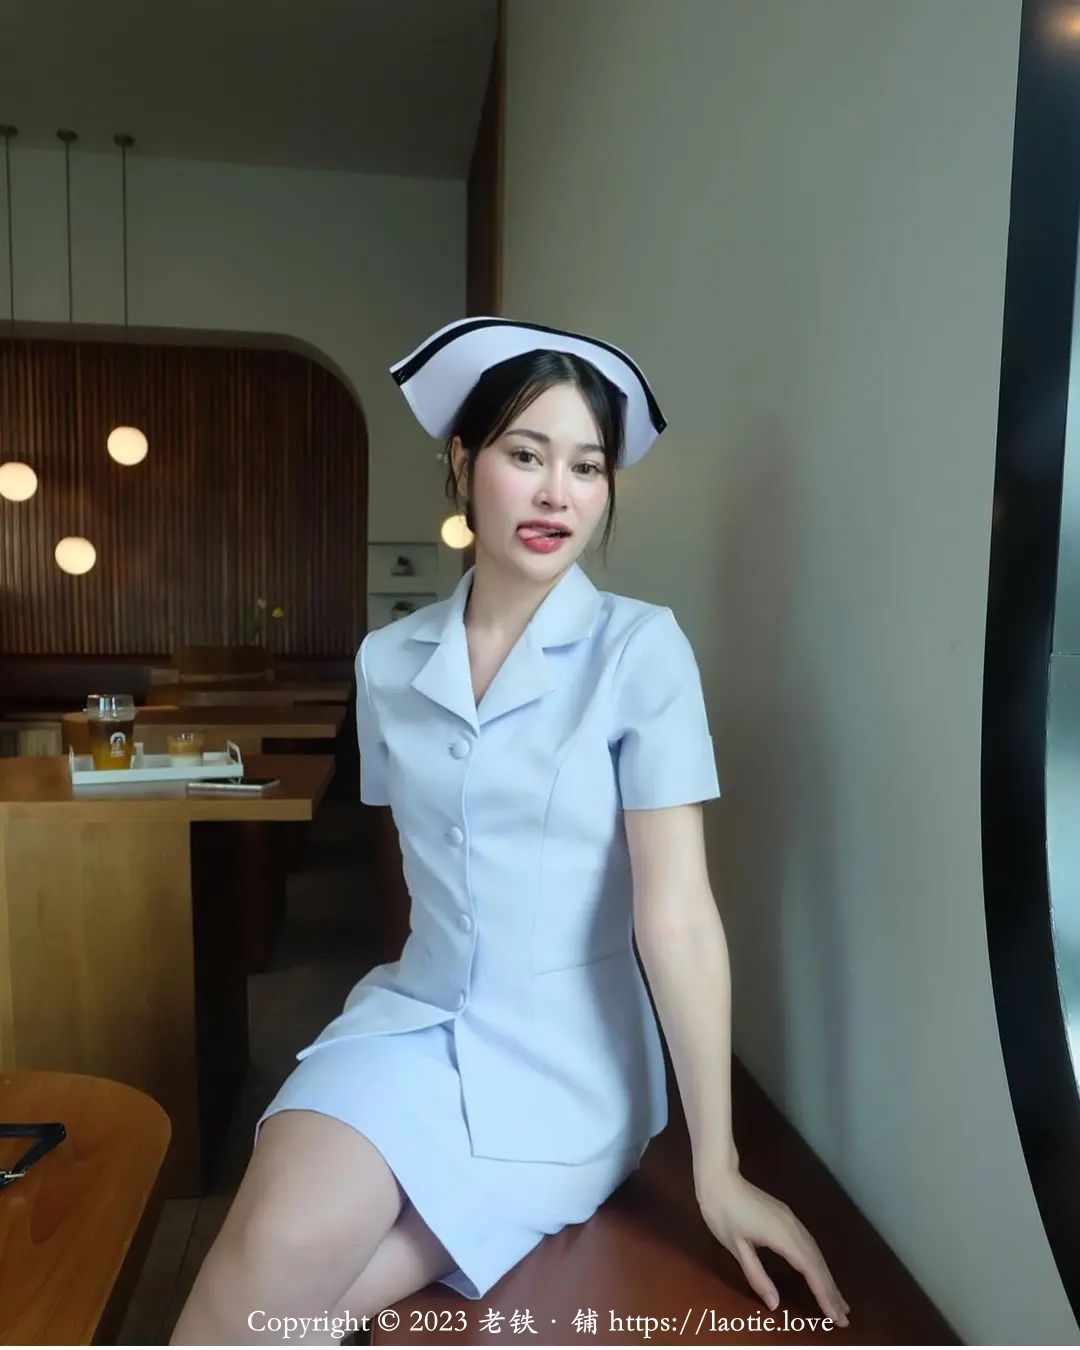 越南的女护士成熟稳重大气很妩媚动人